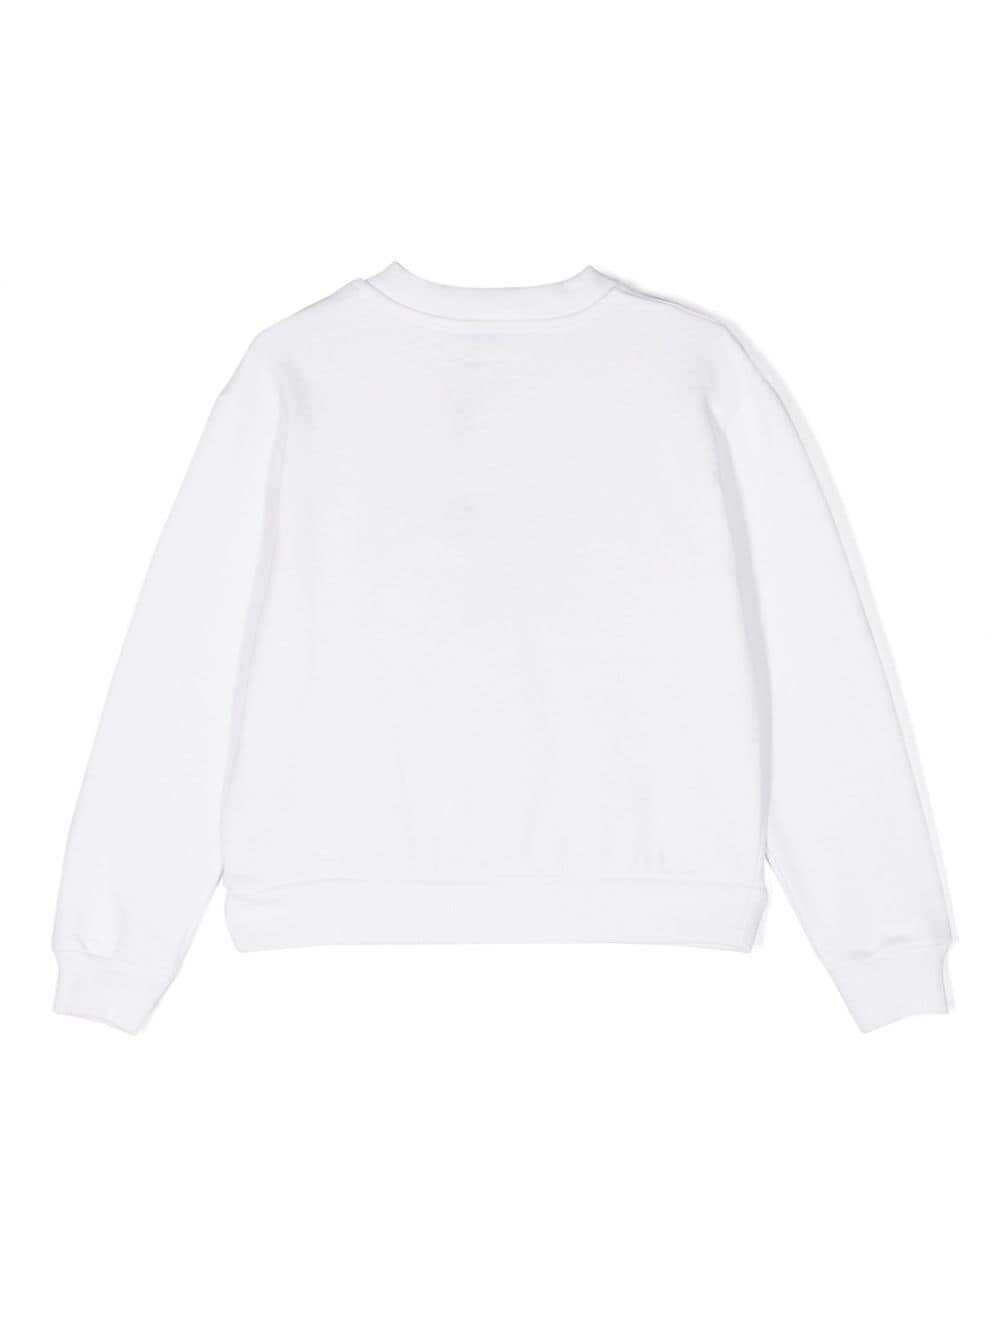 Dolce & Gabbana Kids Dolce & Gabbana Kids Sweaters White White